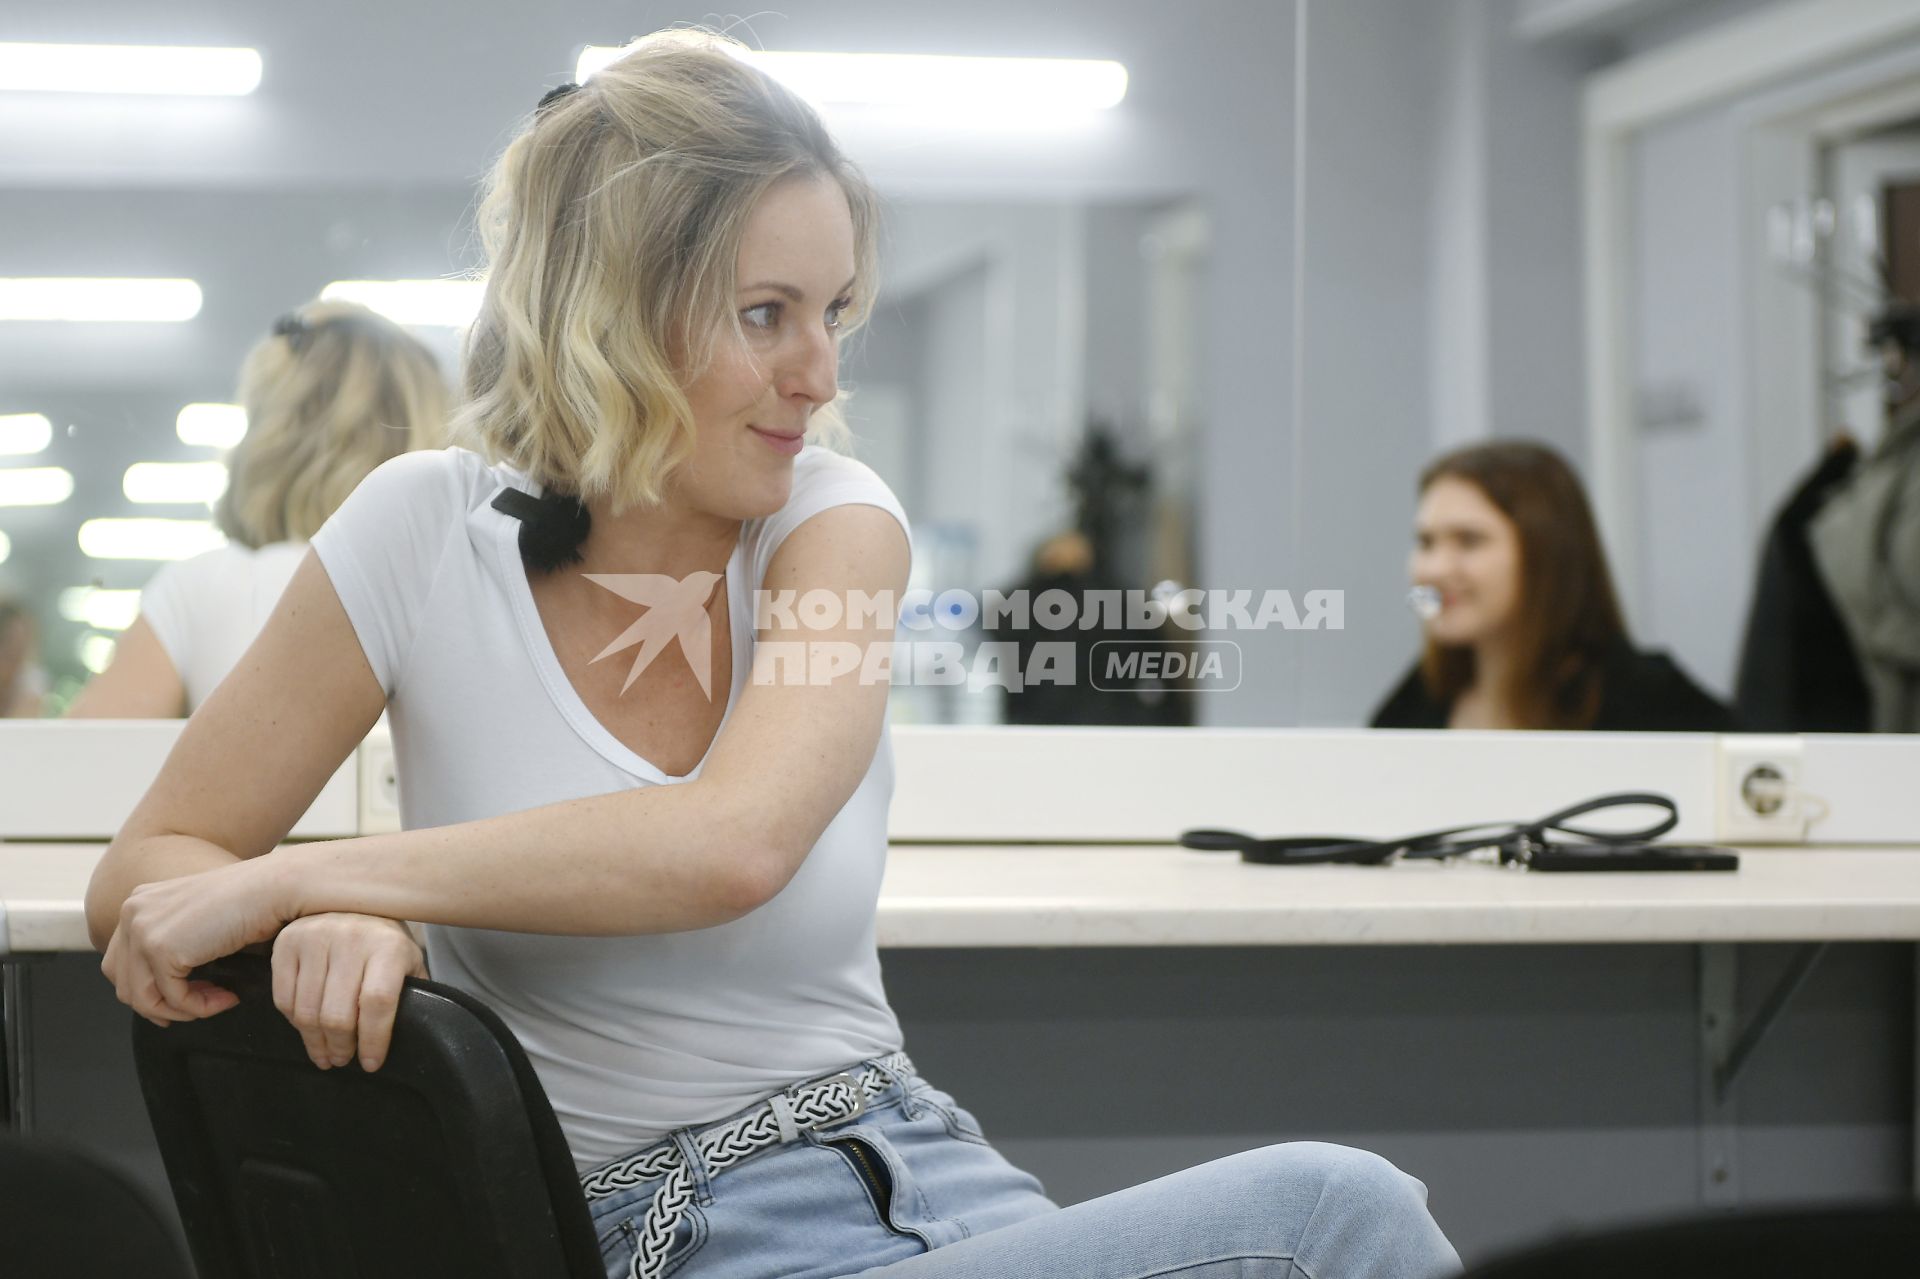 Екатеринбург. Актриса Яна Крайнова во время интервью